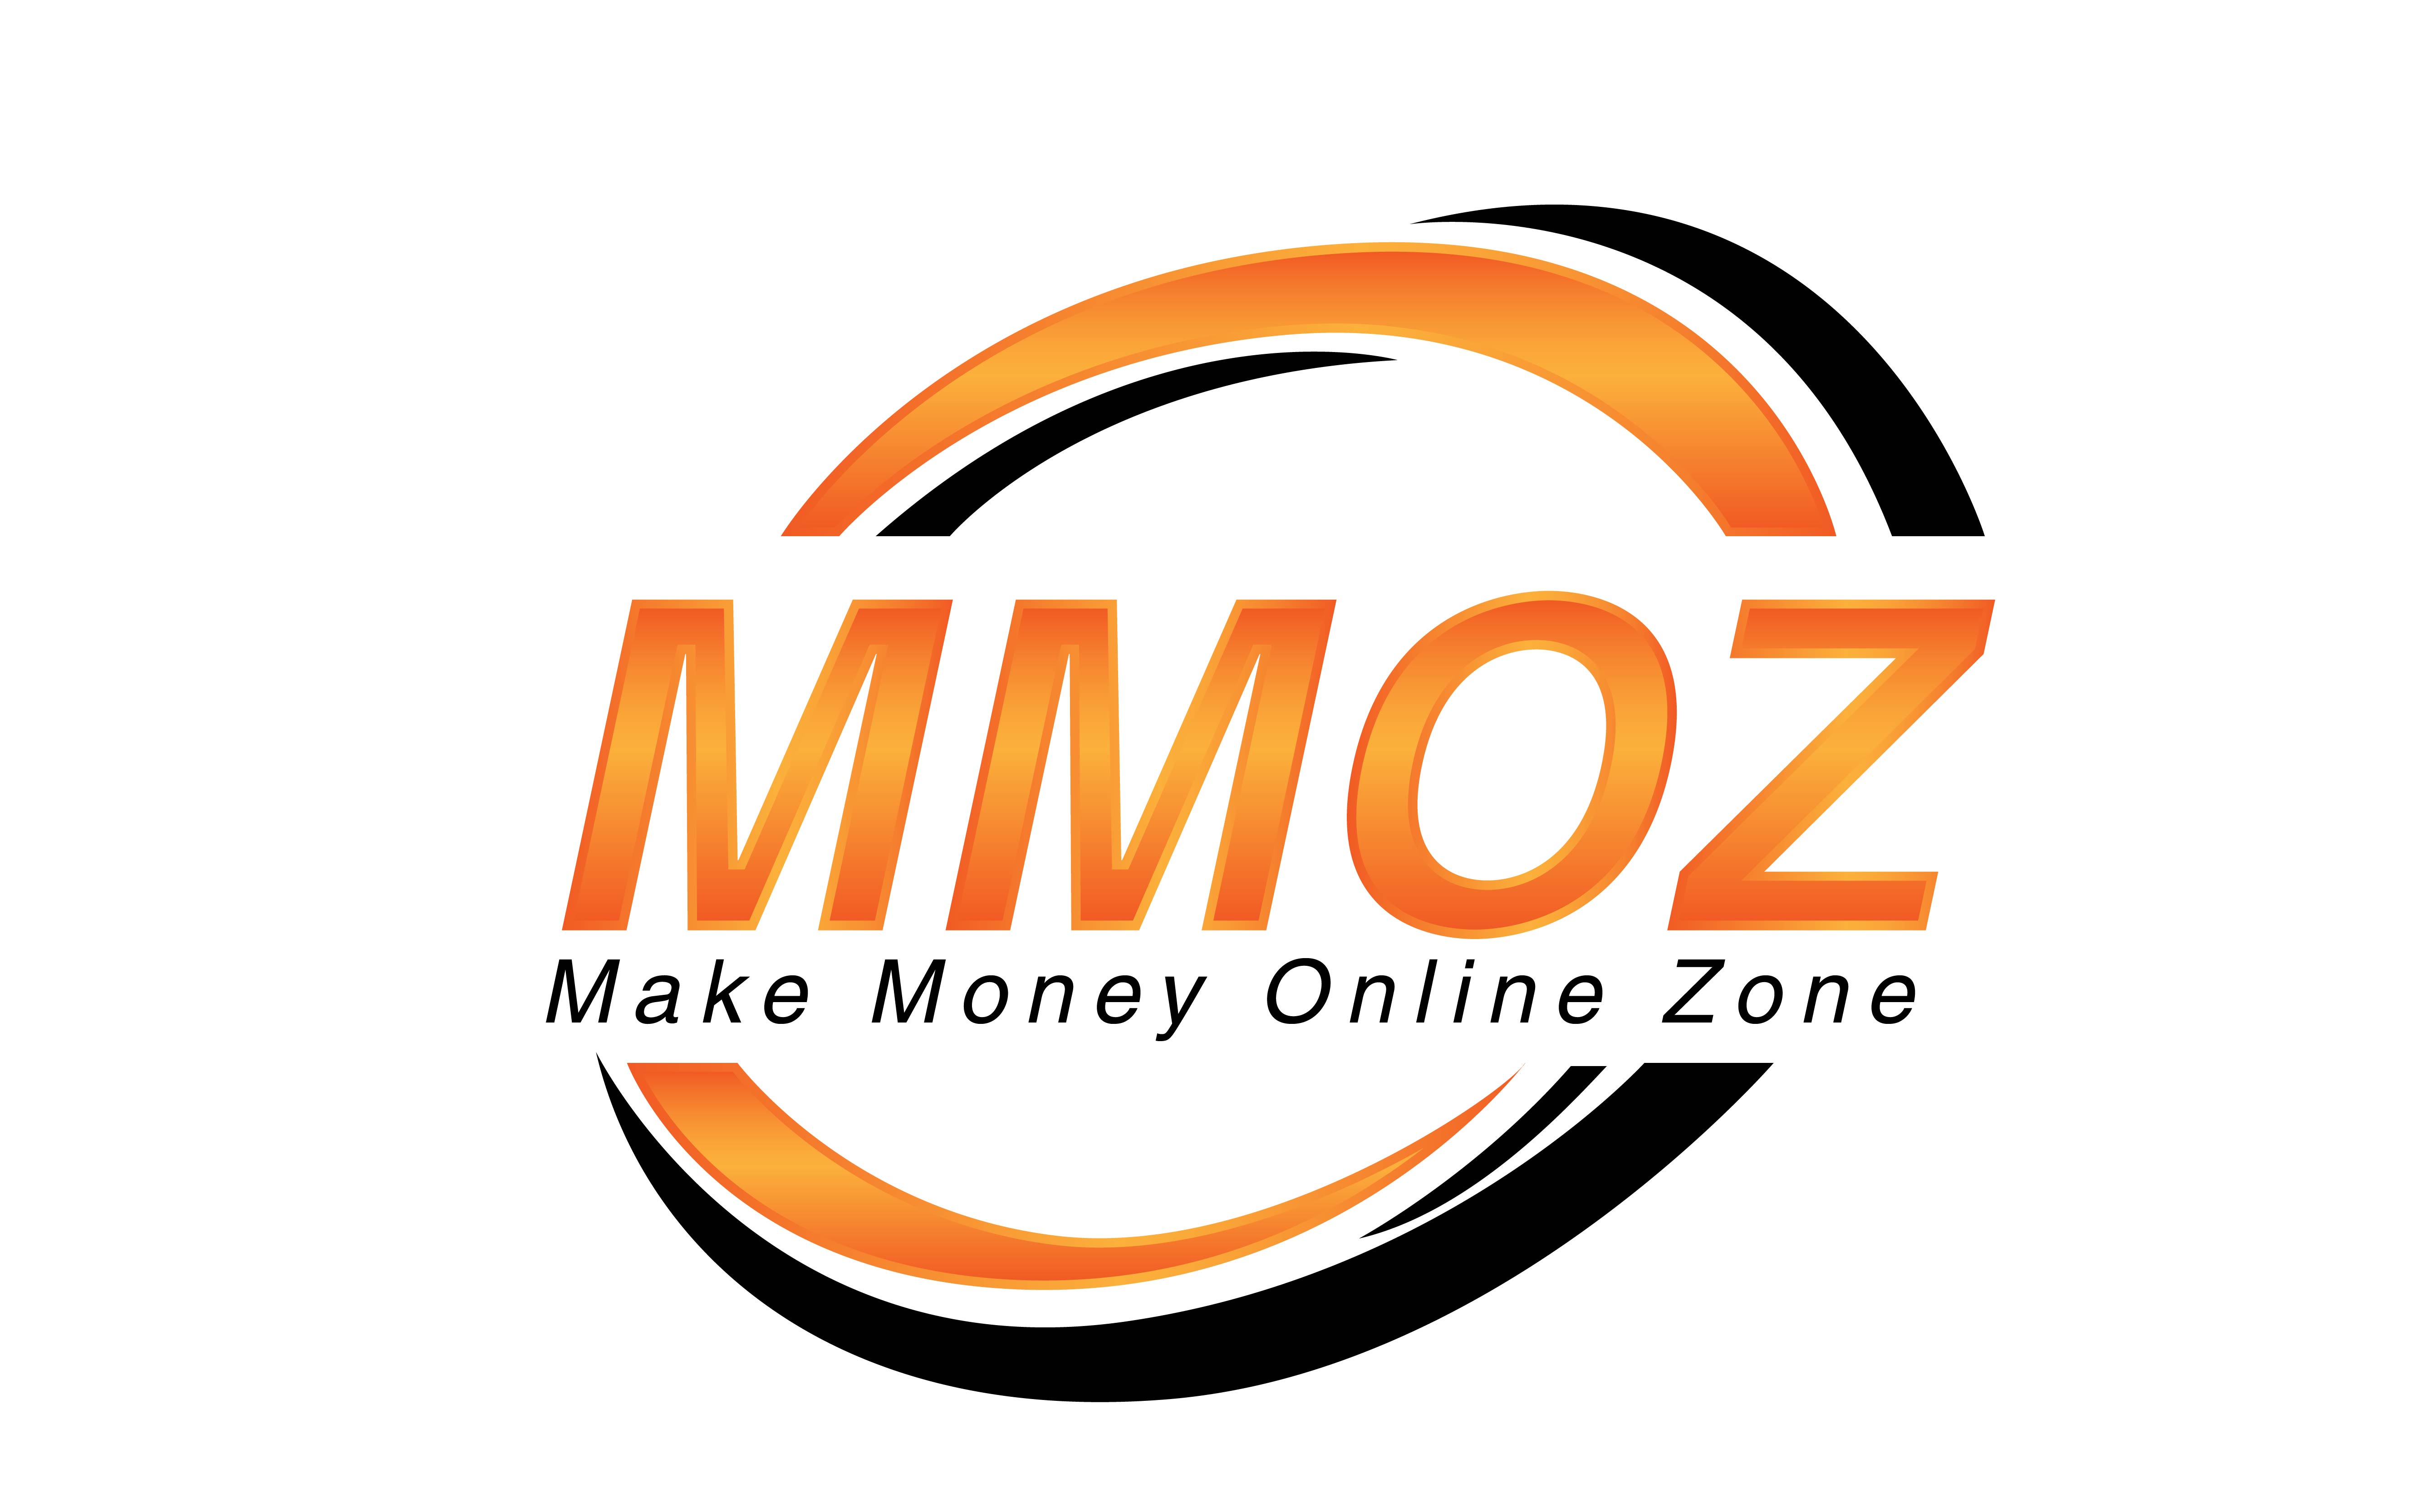 Make Money Online Zone logo - MMOZ